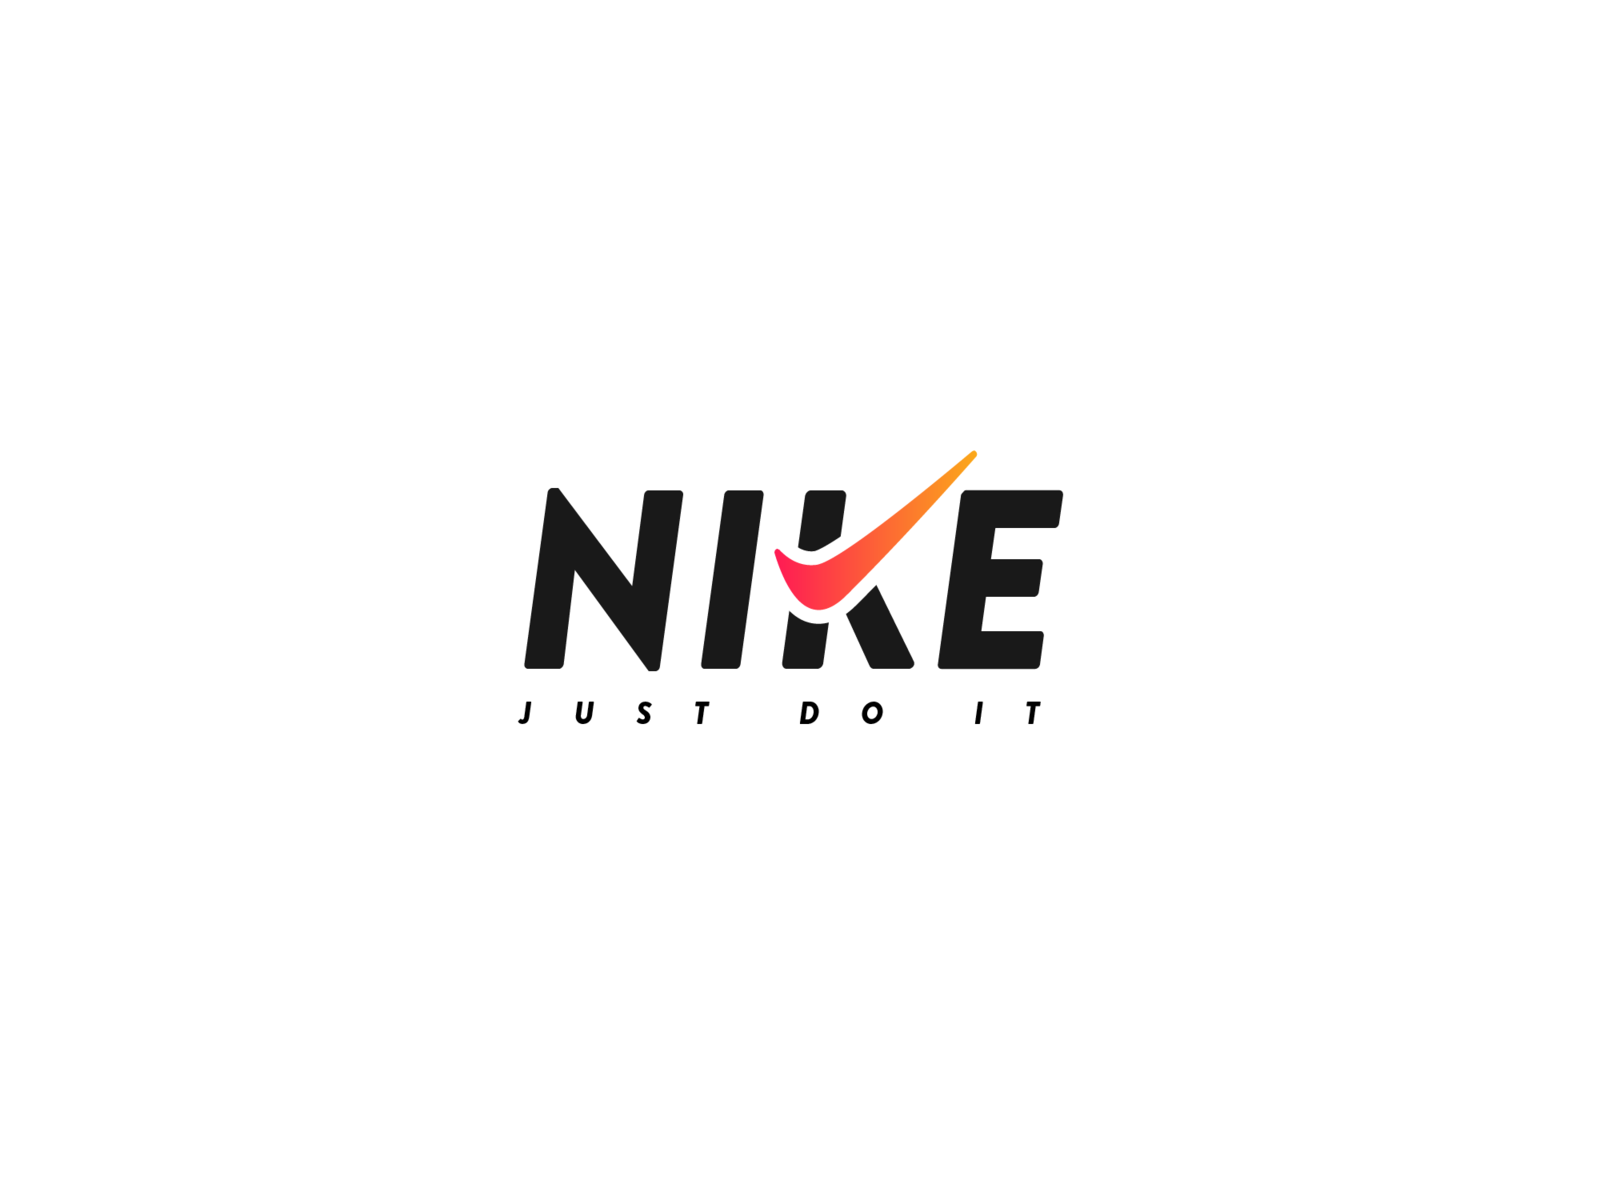 nike logo redesign